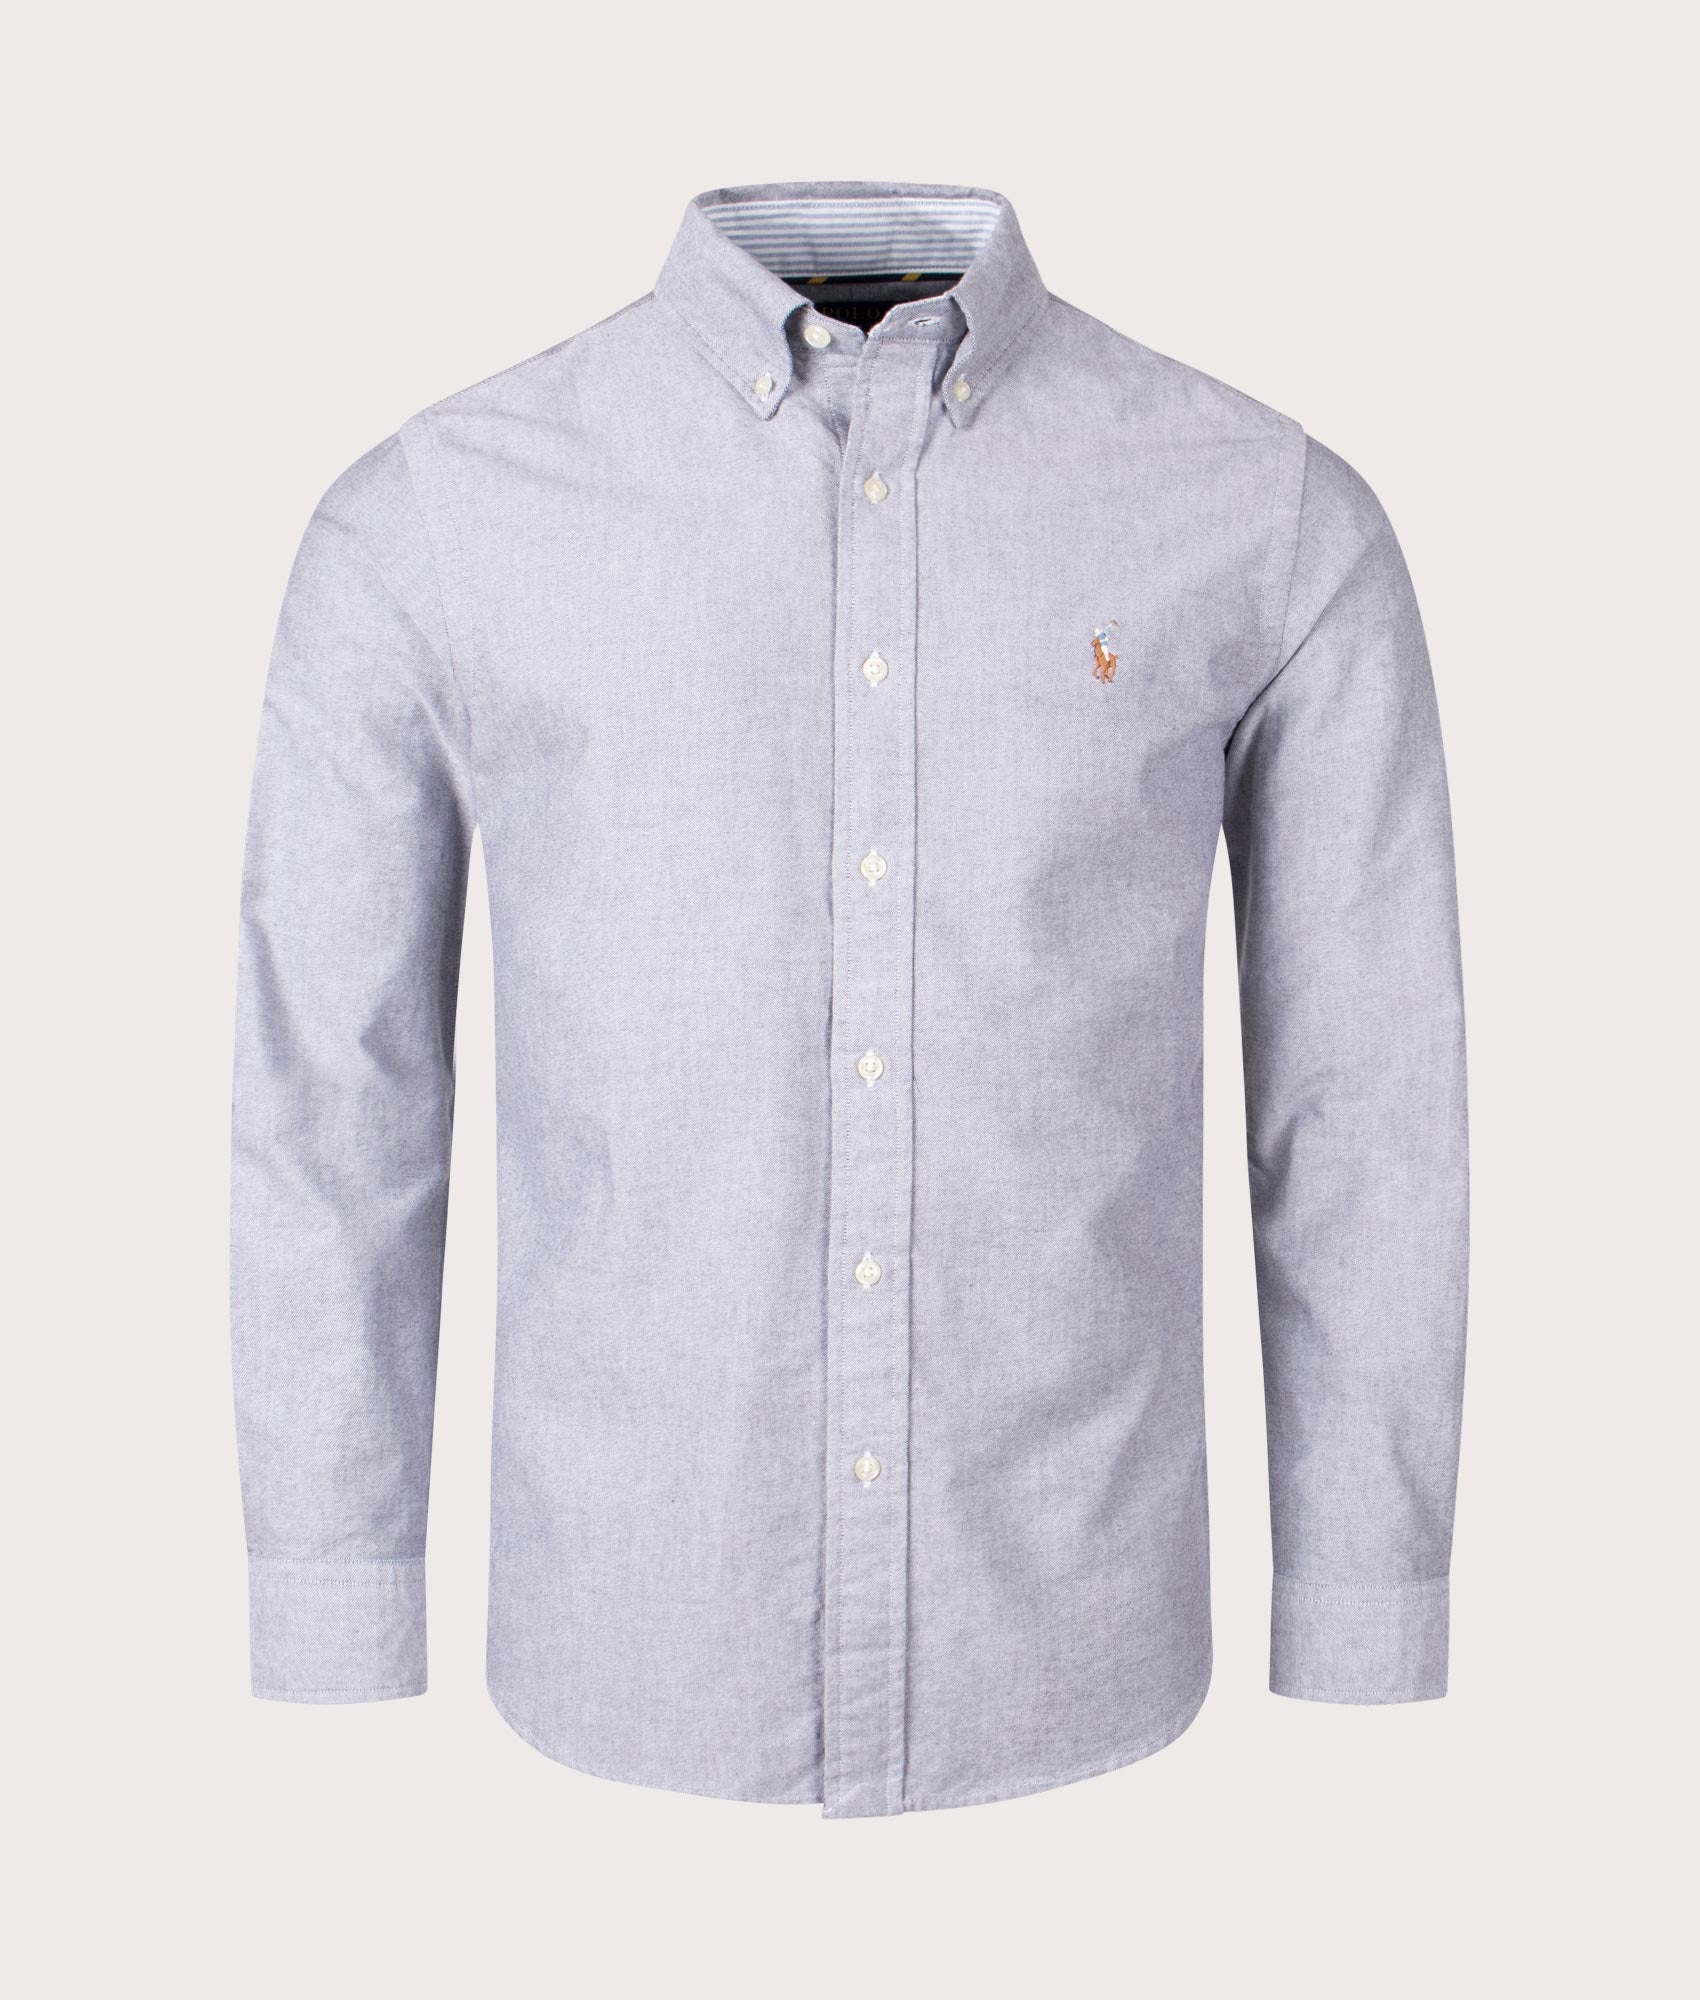 Polo Ralph Lauren Mens Custom Fit Lightweight Oxford Shirt - Colour: 005 Slate - Size: XL